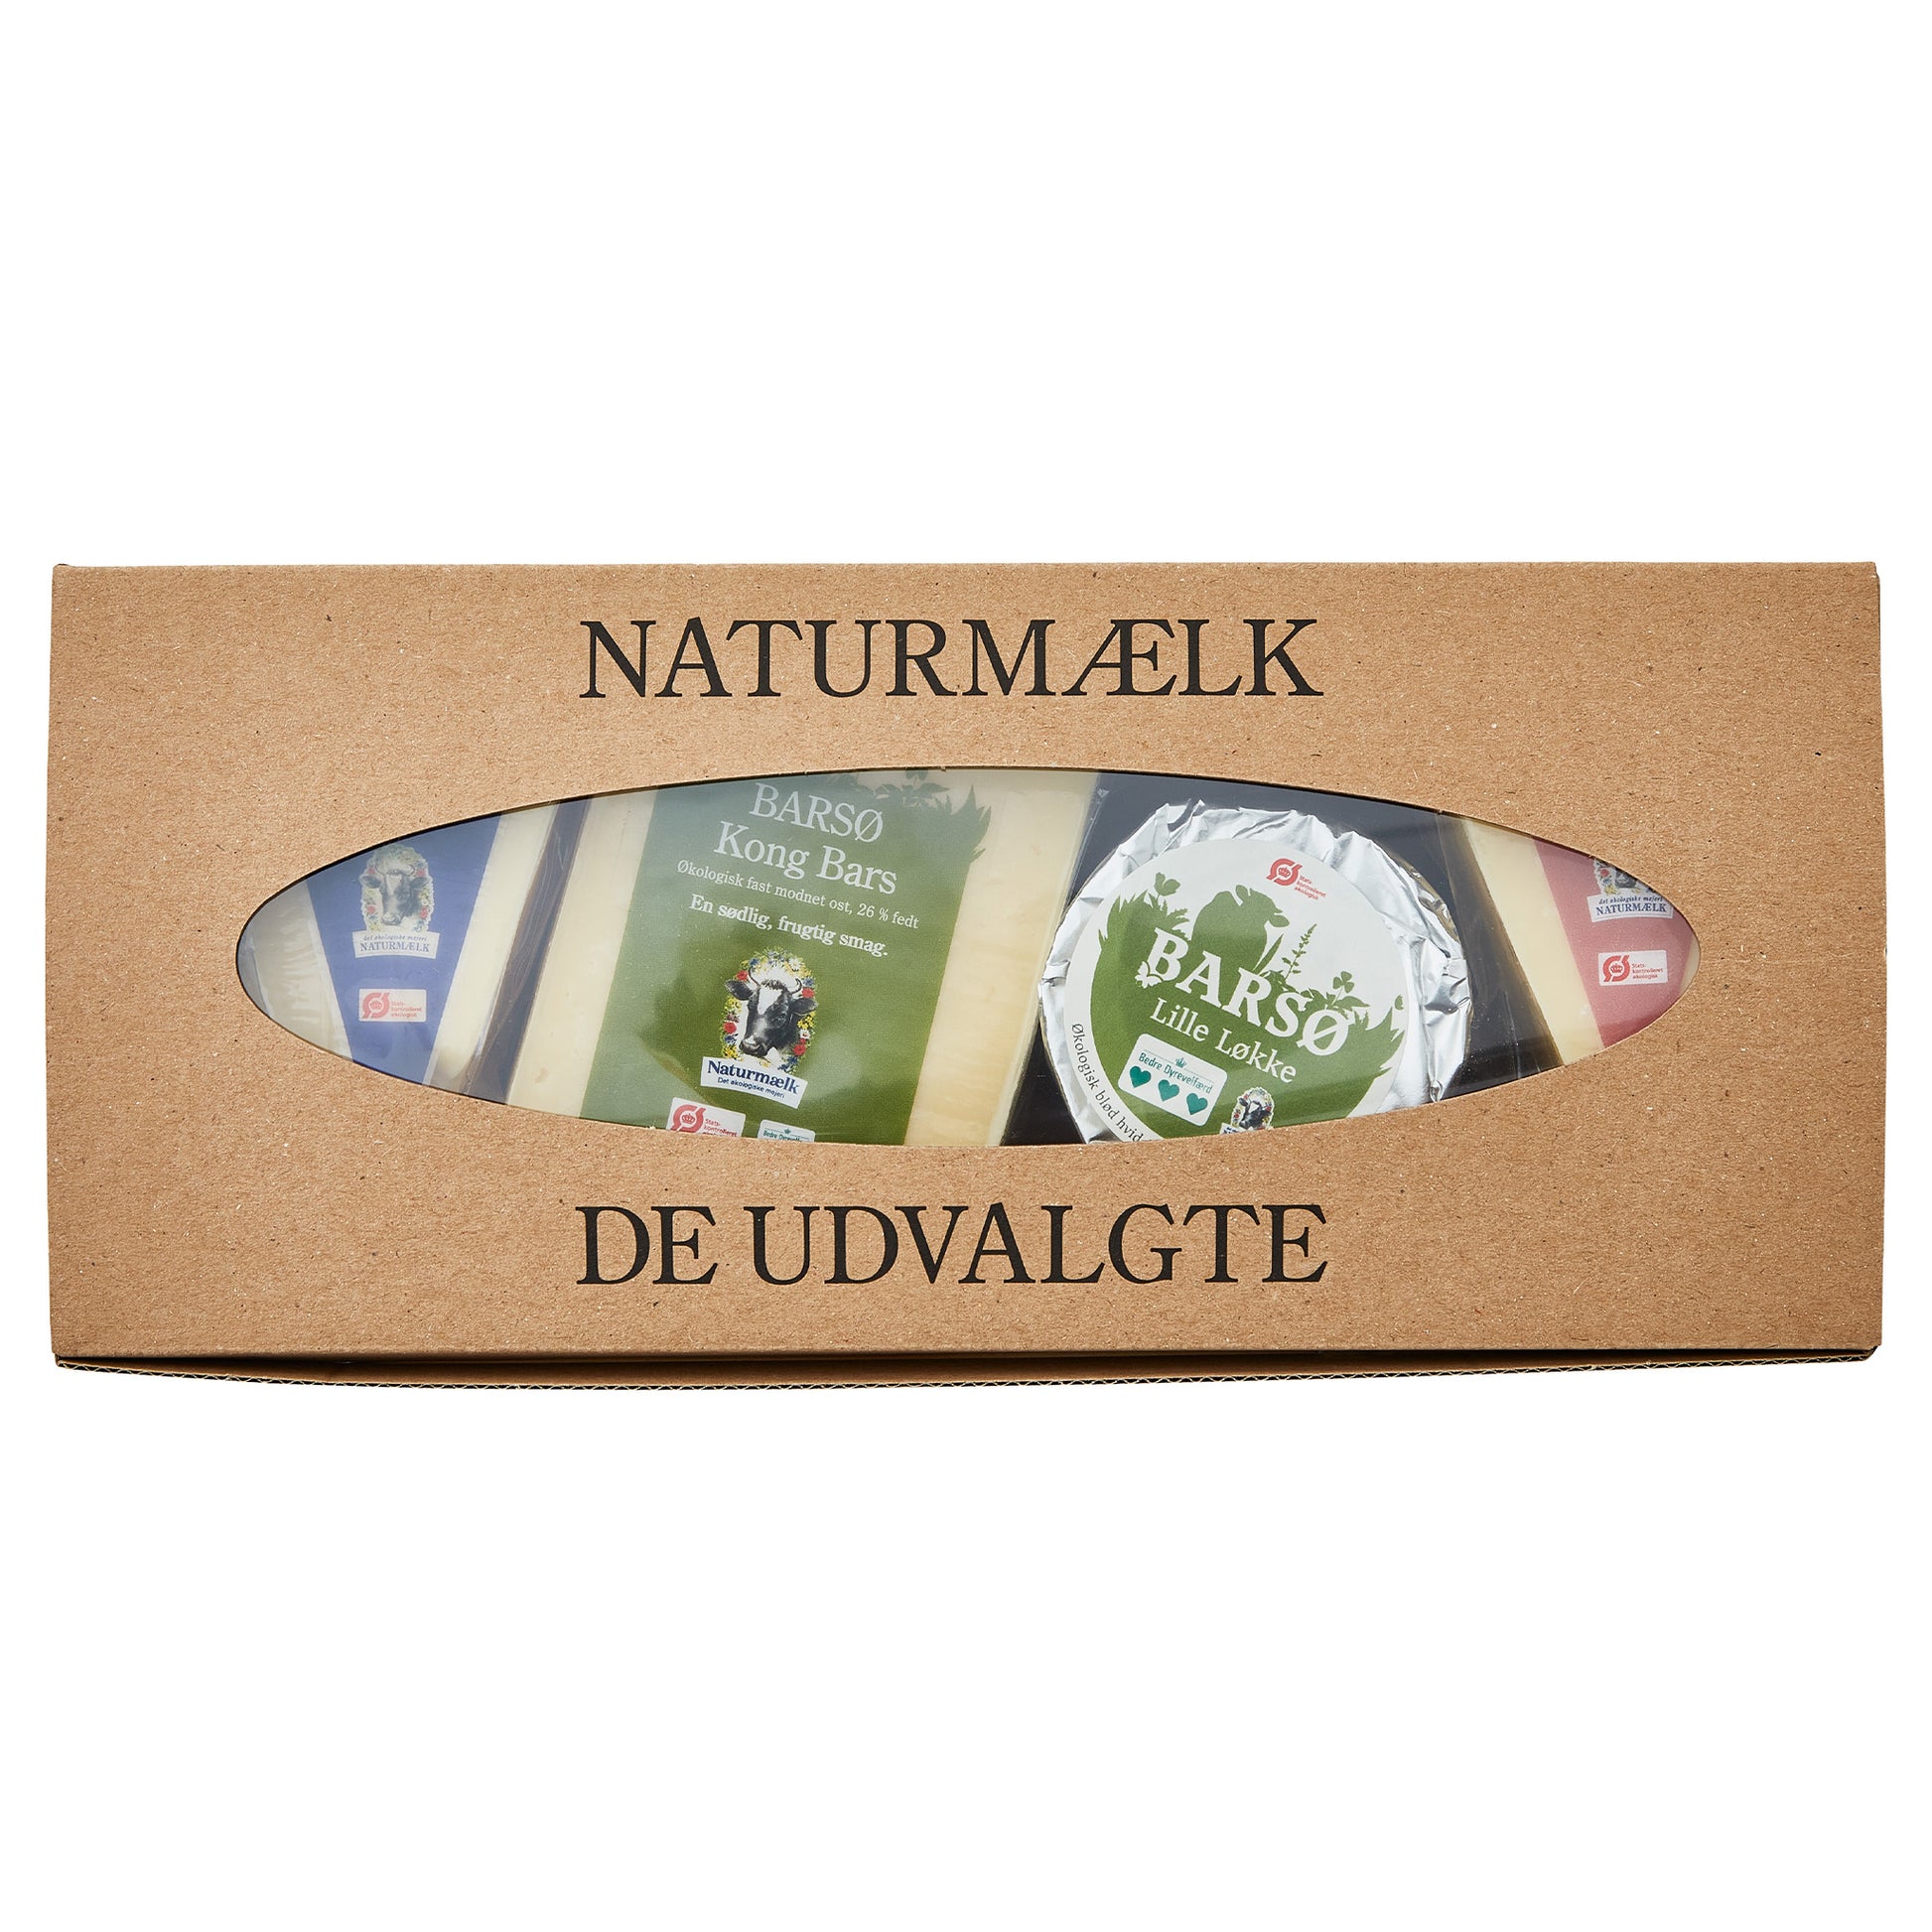 Naturost.dk 'Naturmælk' ostekasse med 'BARSØ' oste synlige gennem oval åbning.